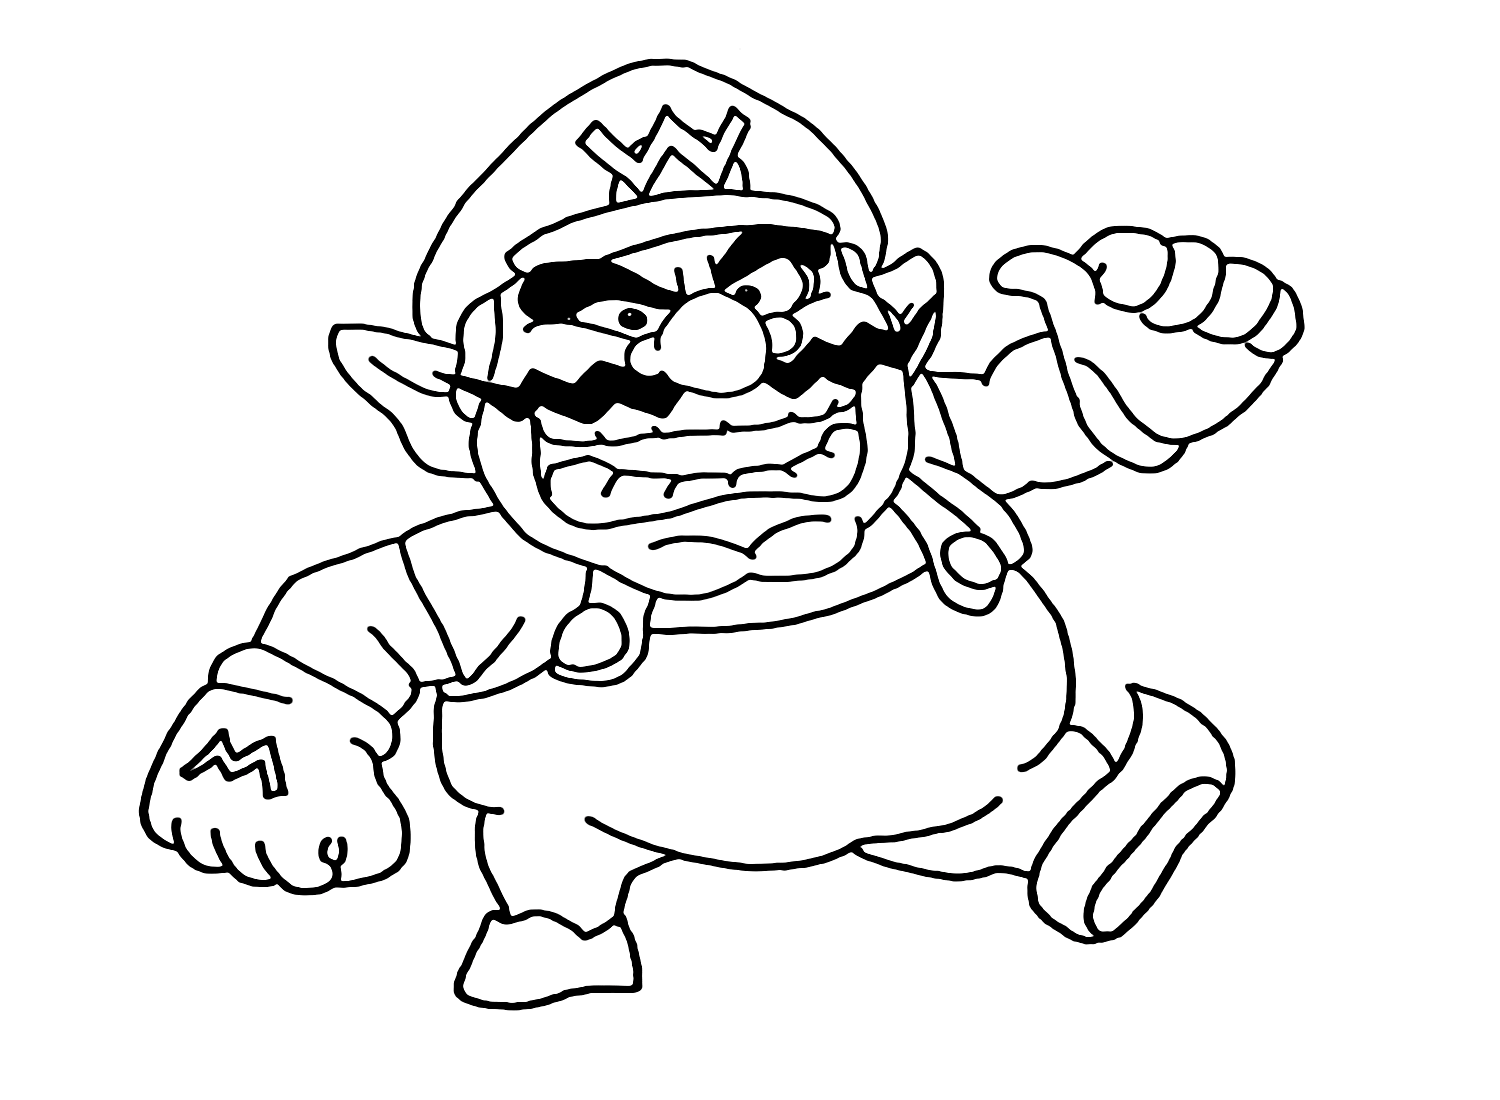 Super Mario Wario from Wario